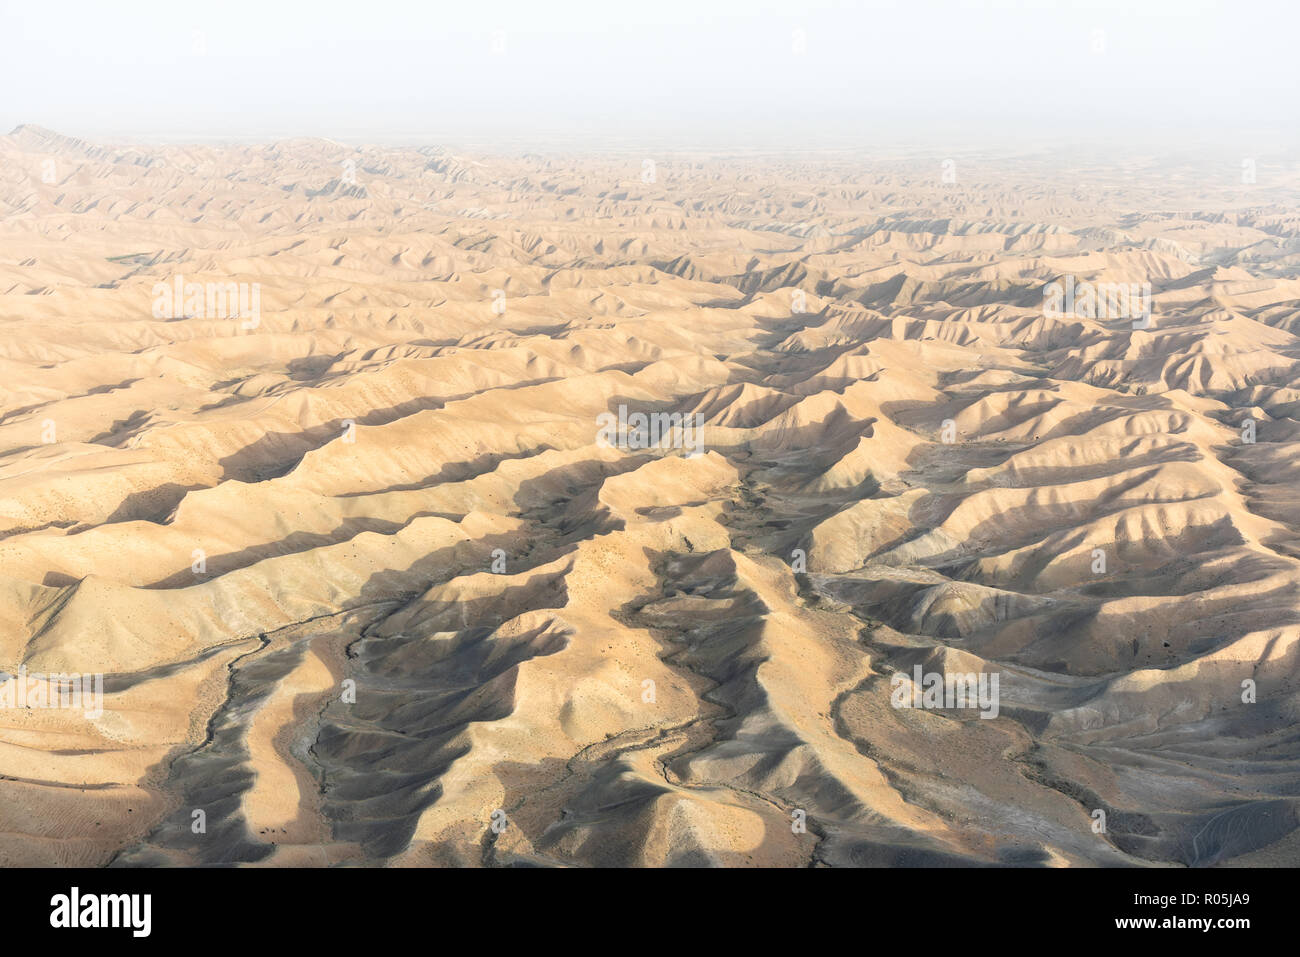 Gokcheh Dagh hills in the Turkmen Sahra around Khaled Nabi cemetery in Golestan, Northern Iran Stock Photo